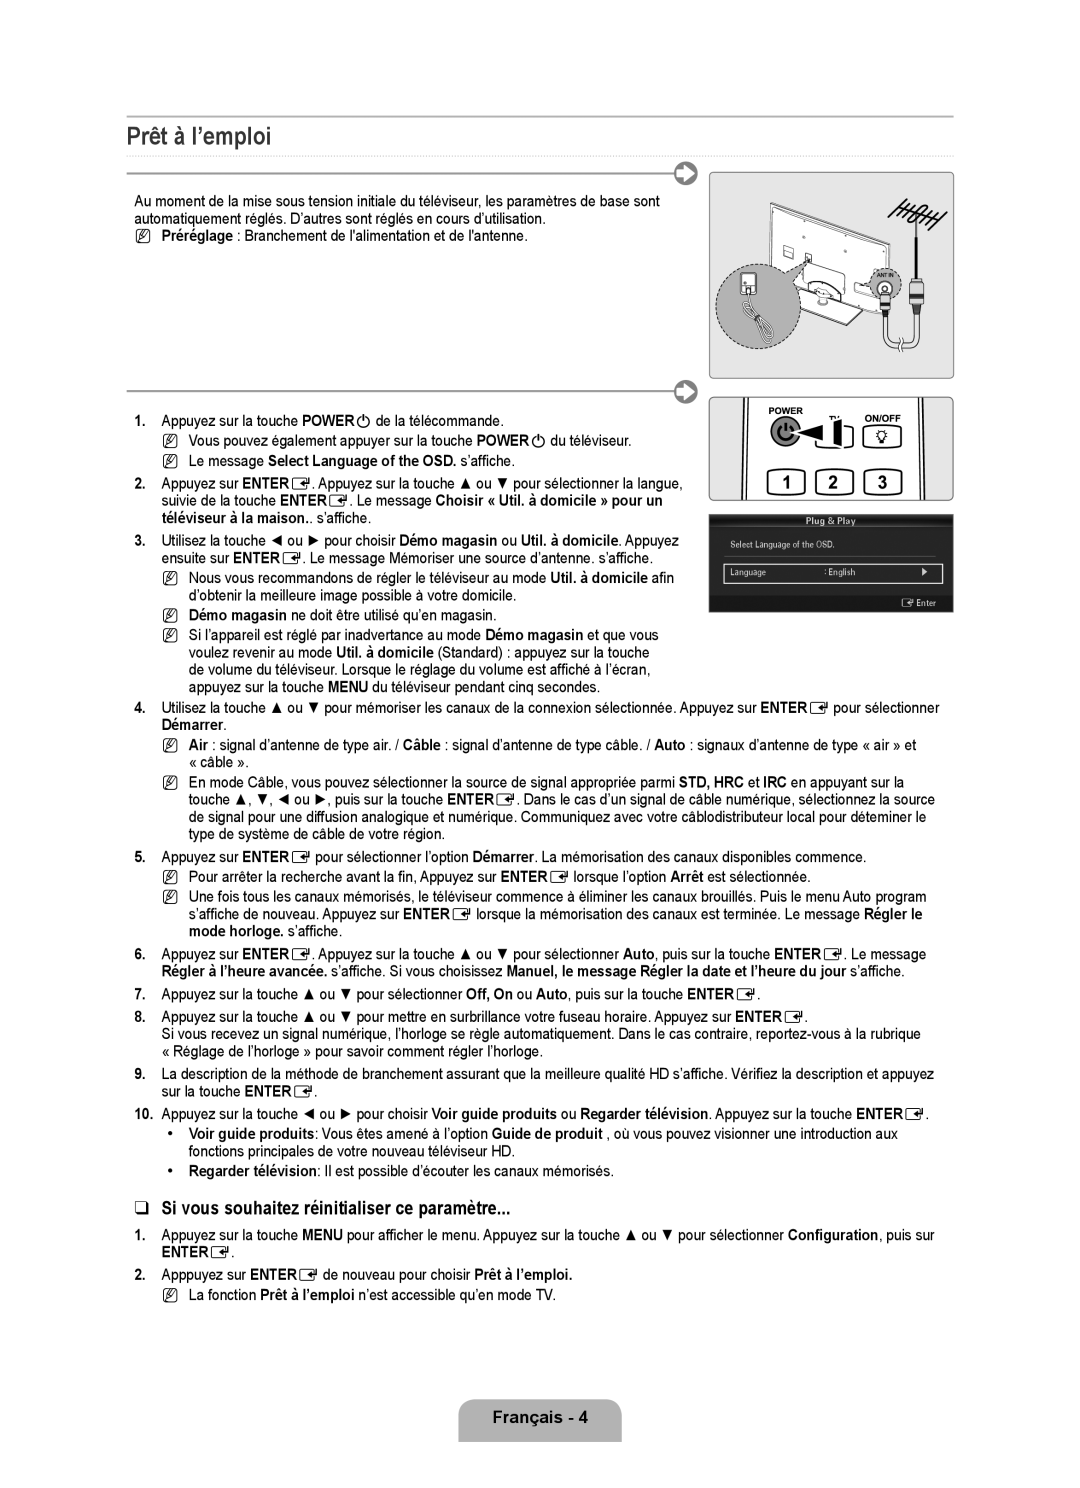 Samsung 7000 setup guide Prêt à I’emploi, Si vous souhaitez réinitialiser ce paramètre, Démarrer, Entere, Français 